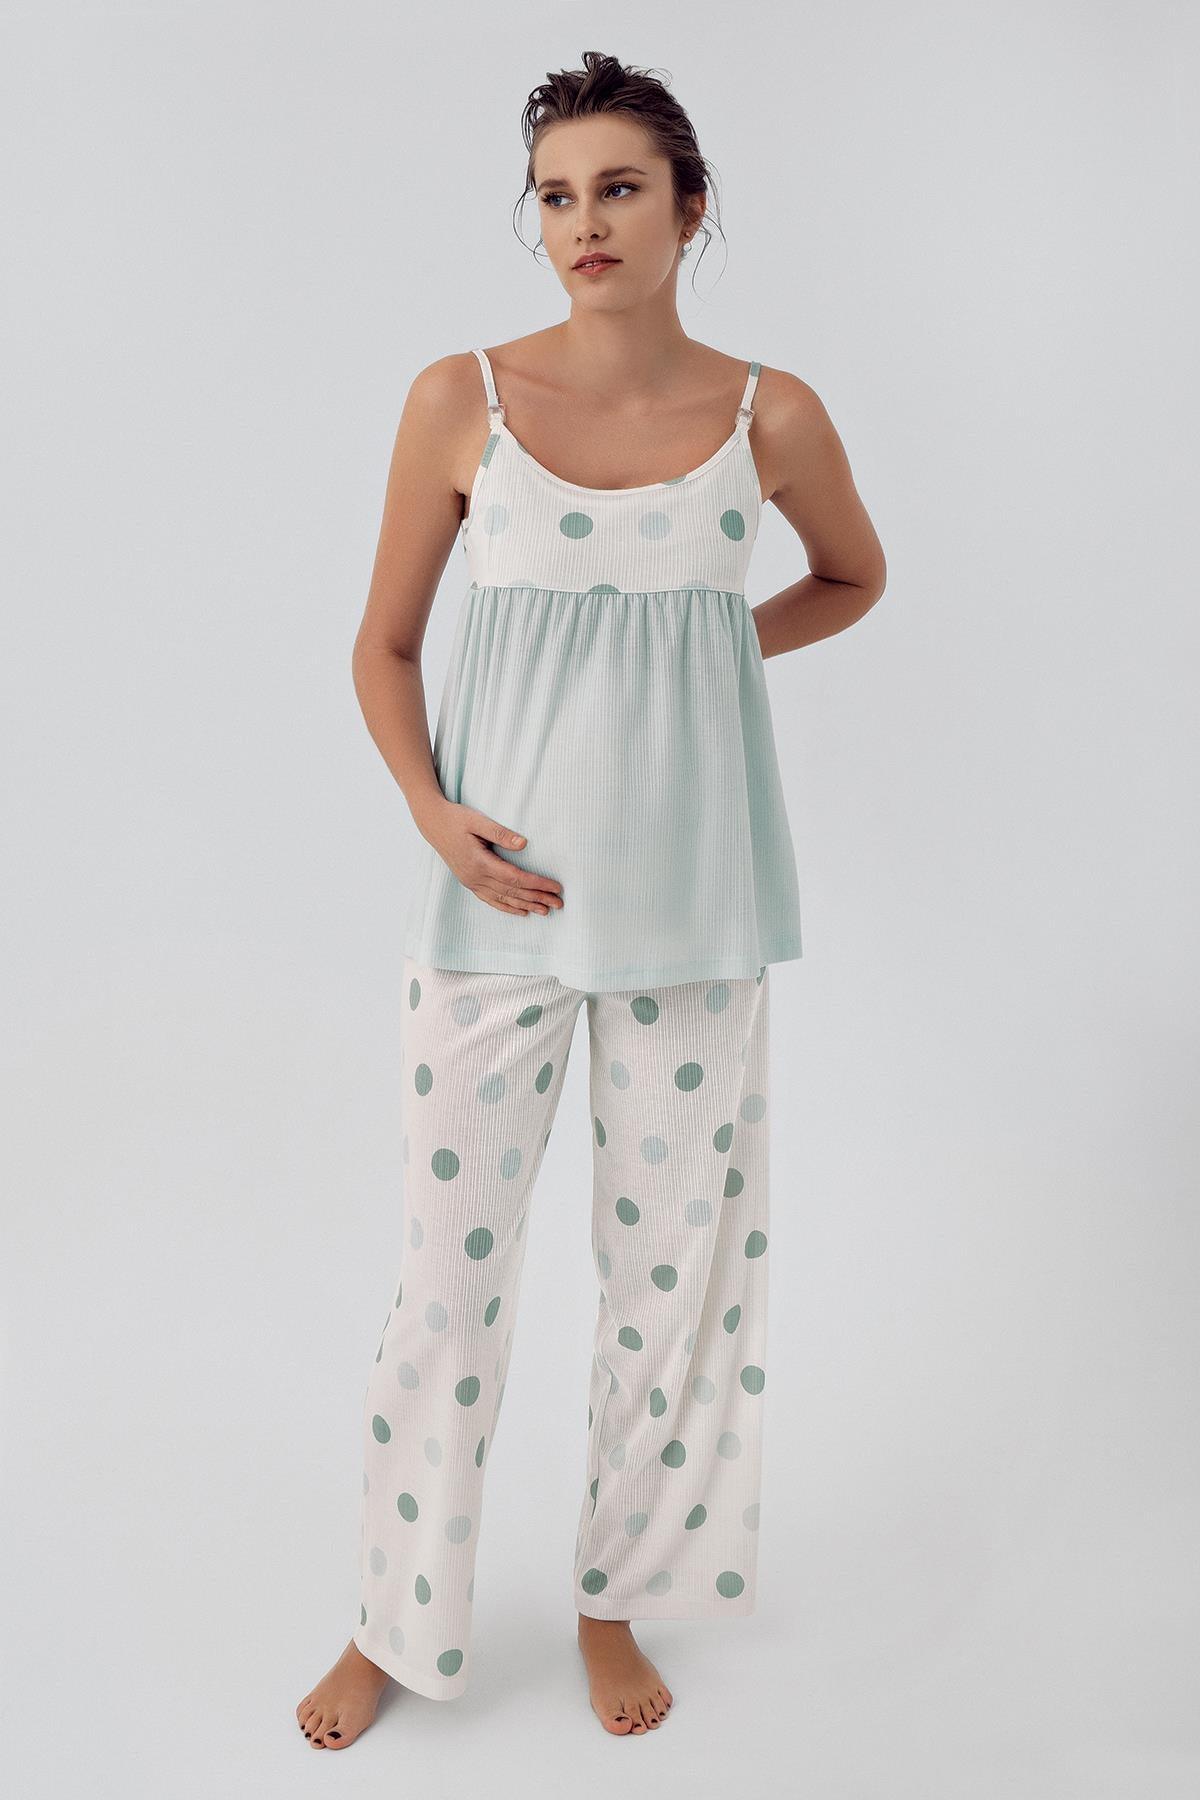 Puantiyeli Askılı Viskon Hamile Pijama Takımı 16201 - Artış Collection